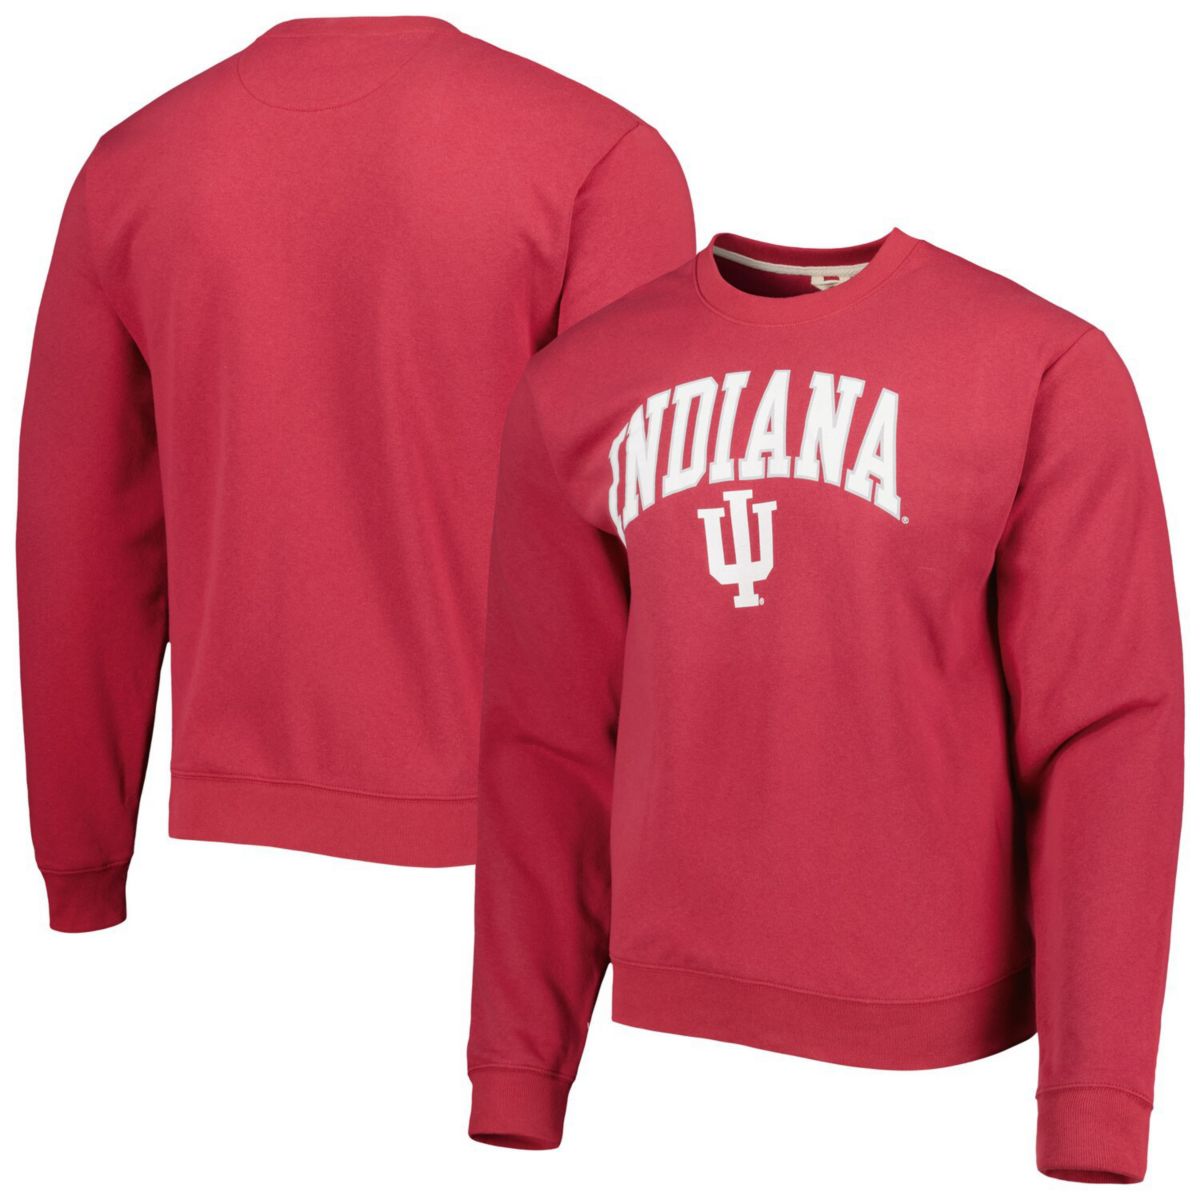 Мужская лига студенческая одежда Crimson Indiana Hoosiers 1965 Arch Essential легкий пуловер толстовка League Collegiate Wear